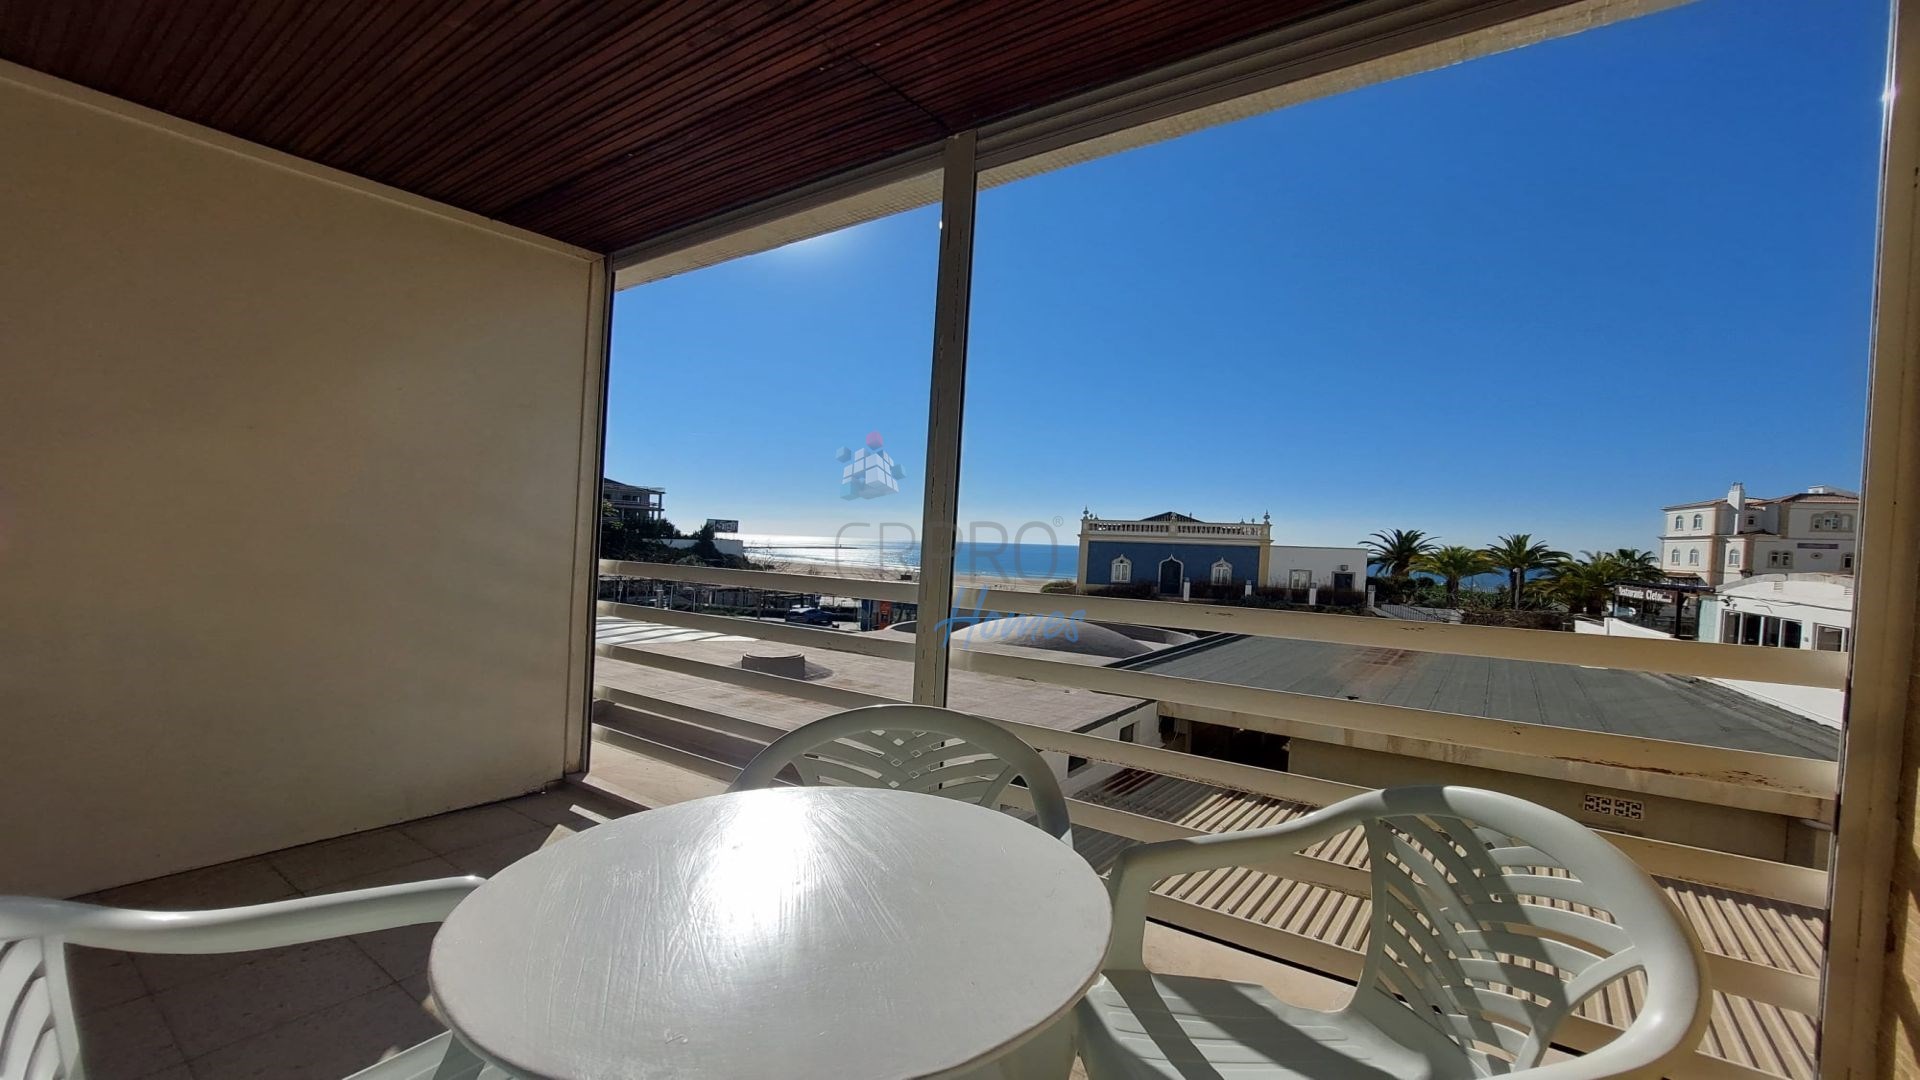 Apartamento duplex T4 localizado na Praia da Rocha com vista mar